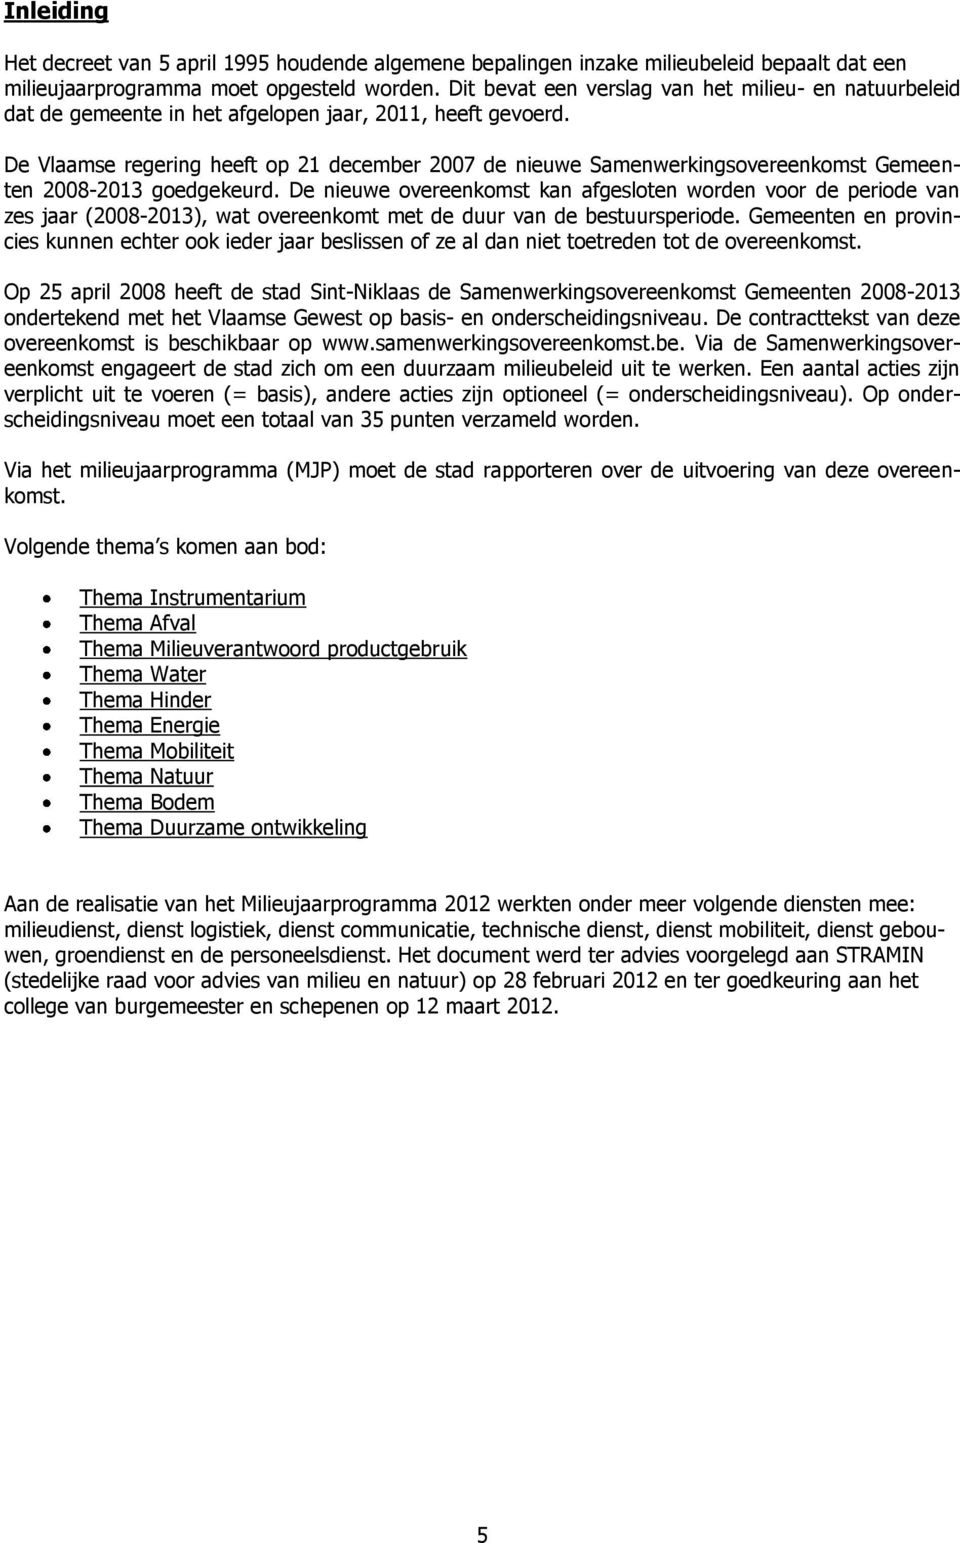 De Vlaamse regering heeft op 21 december 2007 de nieuwe Samenwerkingsovereenkomst Gemeenten 2008-2013 goedgekeurd.